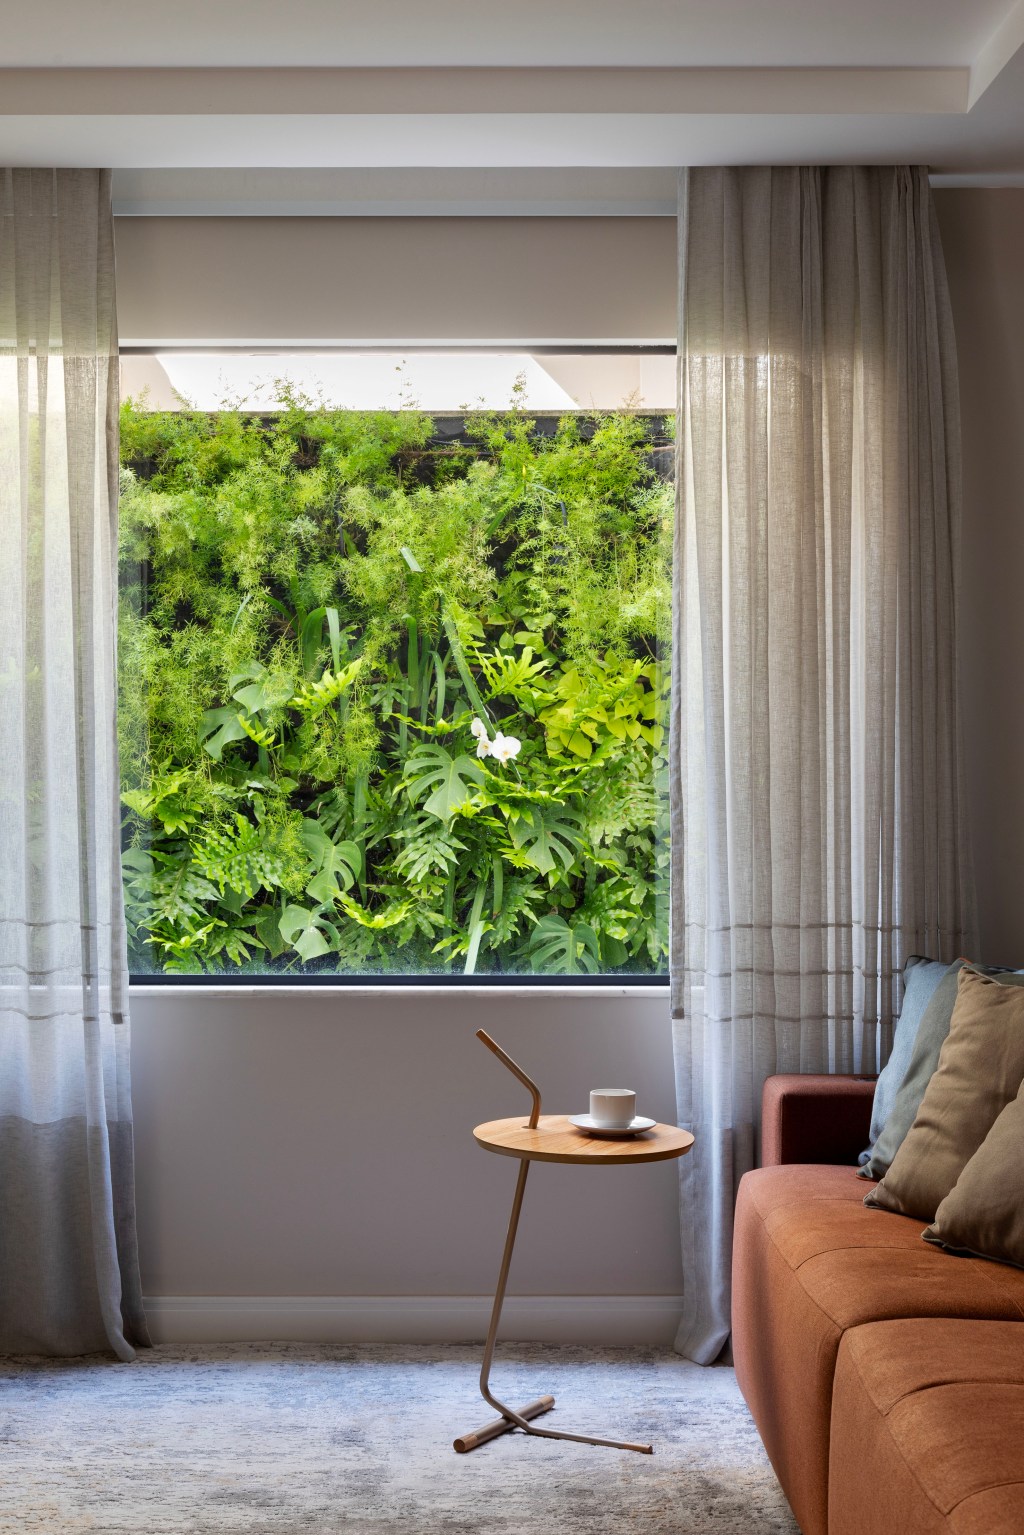 Área de 360 m² ganha jardim com paisagismo tropical e muitas flores. Projeto Maira Duarte. Na foto, vista da janela para o jardim vertical.